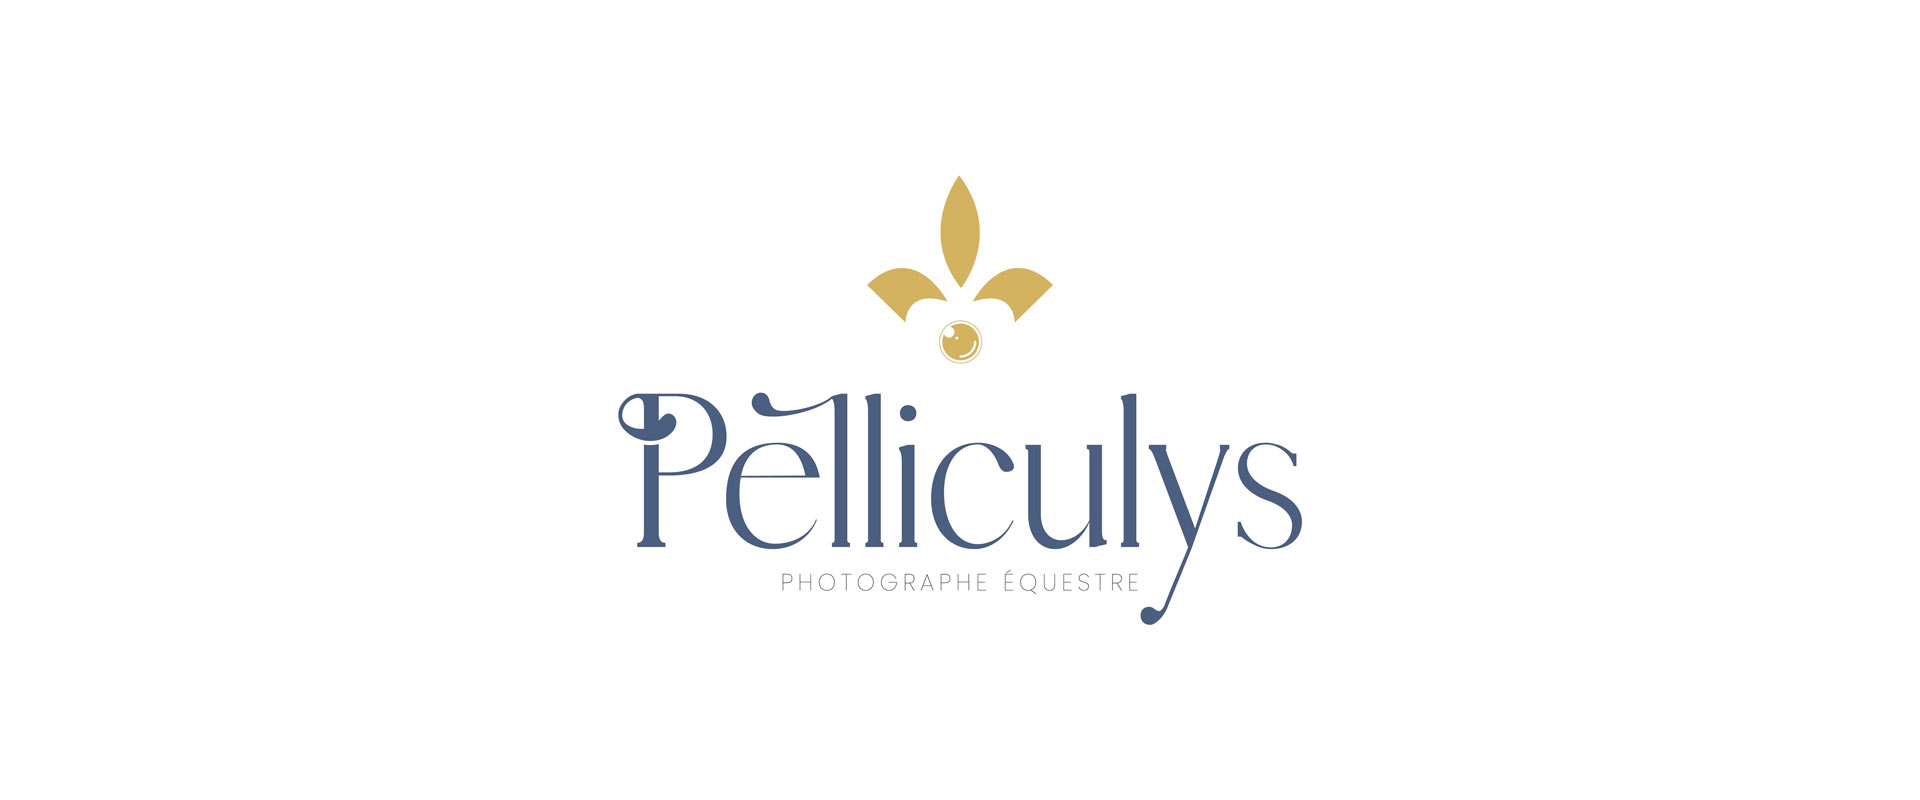 pelliculys logo identite visuelle site internet photographe agence owmel saint gilles croix de vie vendee 4